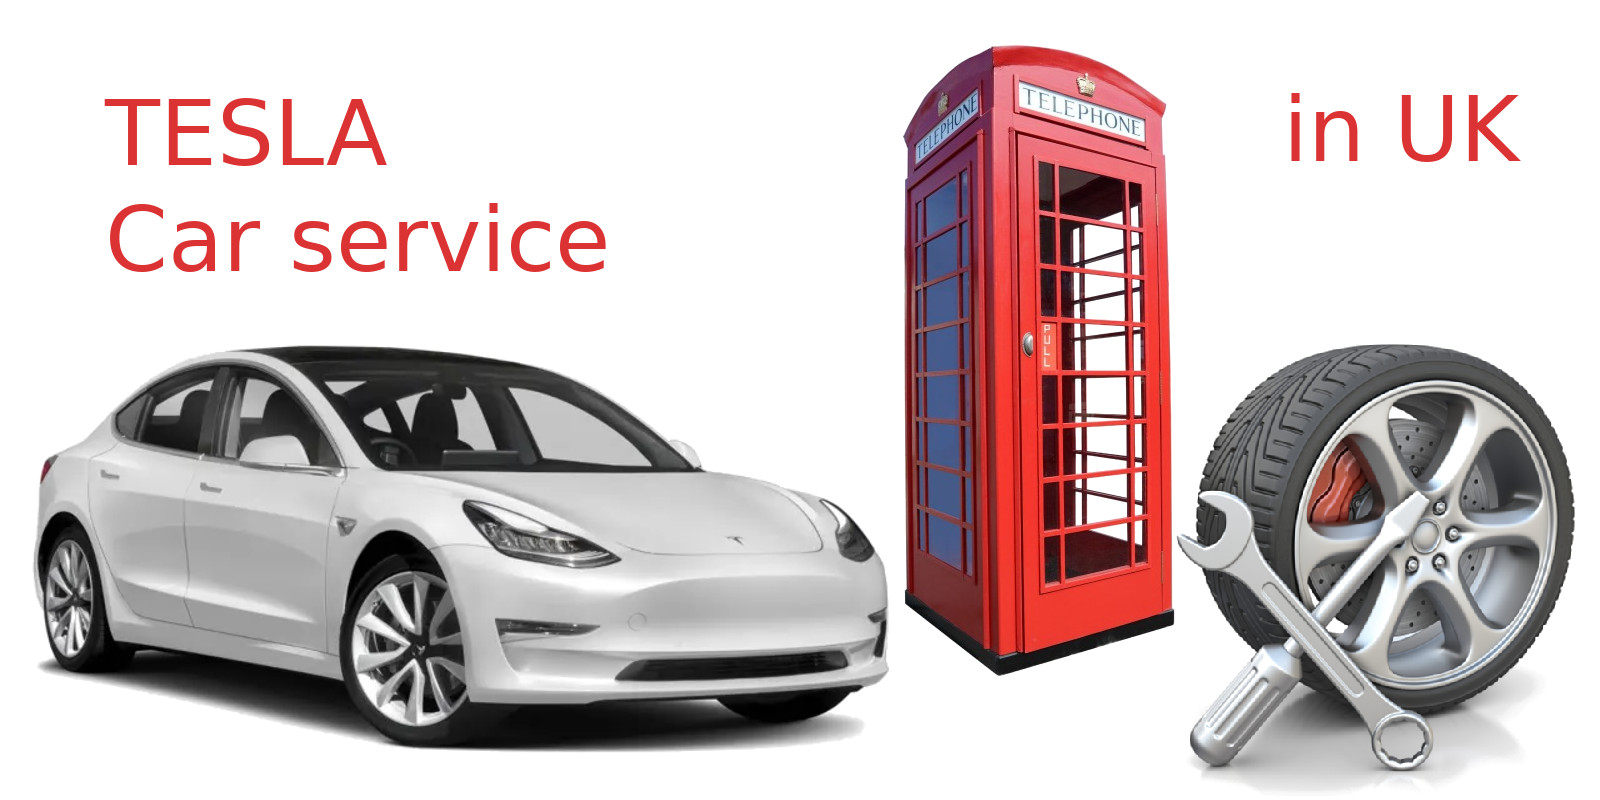 Tesla car service in UK